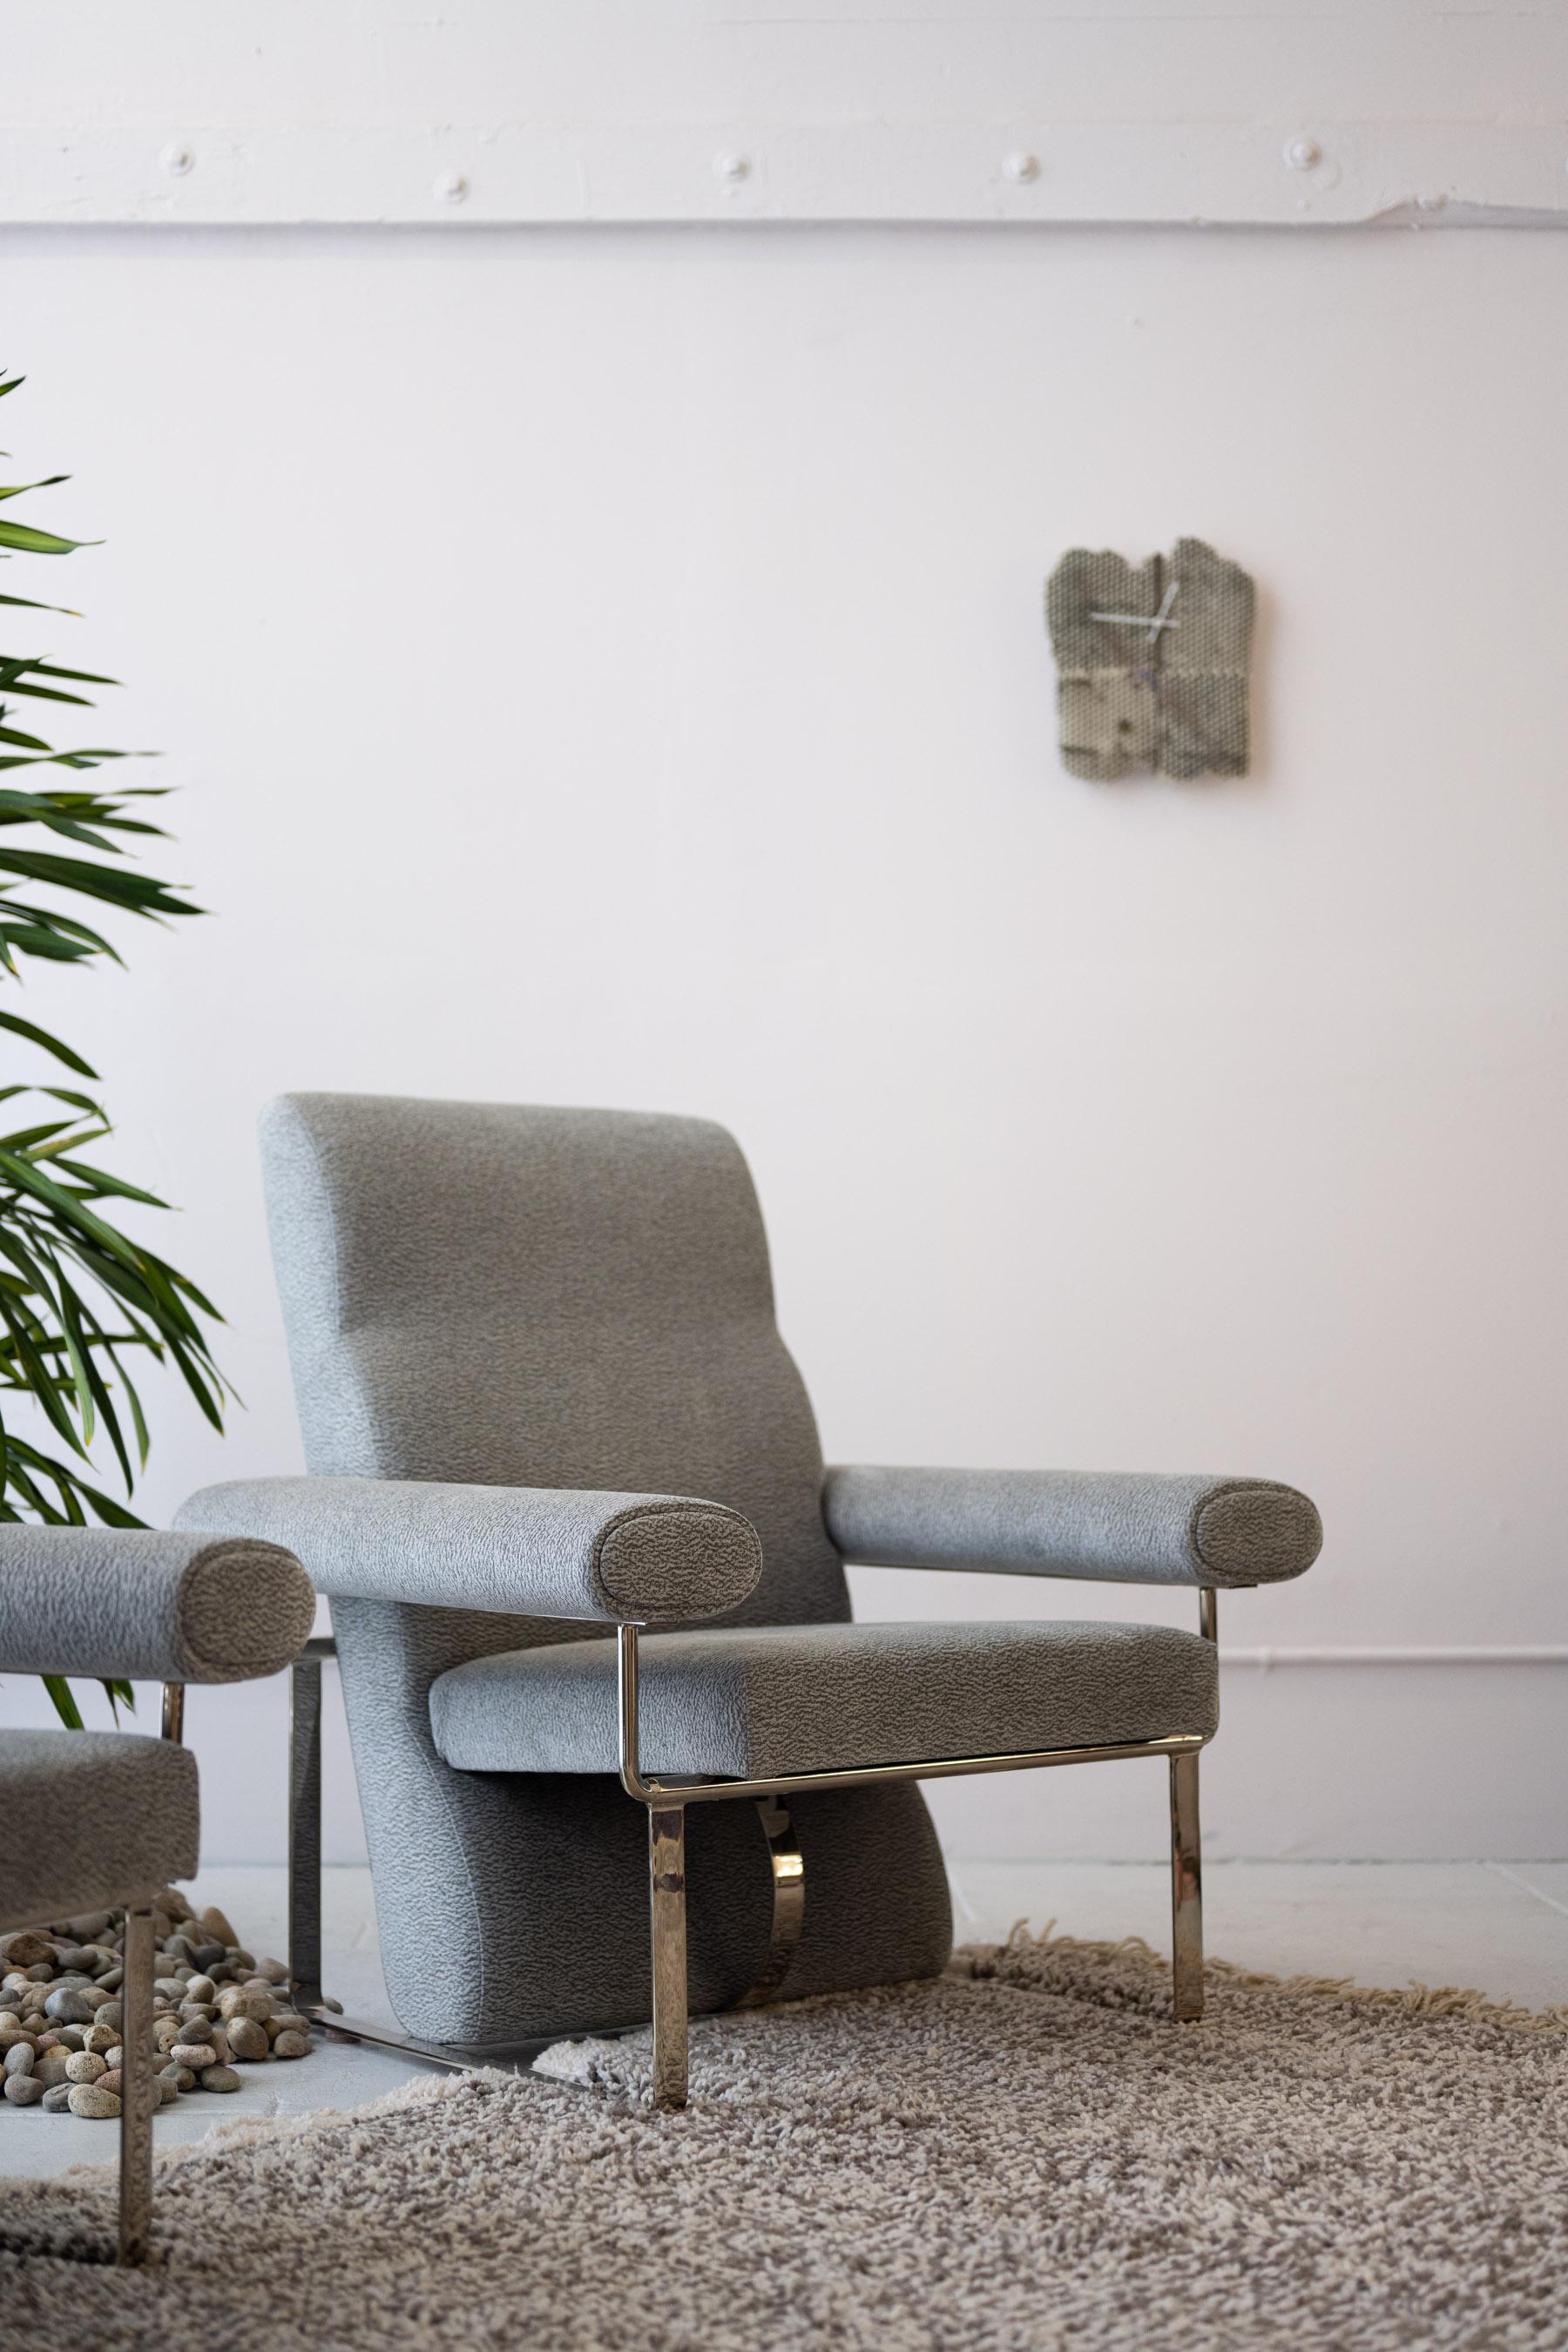 Der Ricard Chair ist eine Kombination aus verschiedenen Formen, die sich zu einem skulpturalen und sehr bequemen Stuhl mit hoher Rückenlehne verbinden. Hergestellt in Los Angeles.